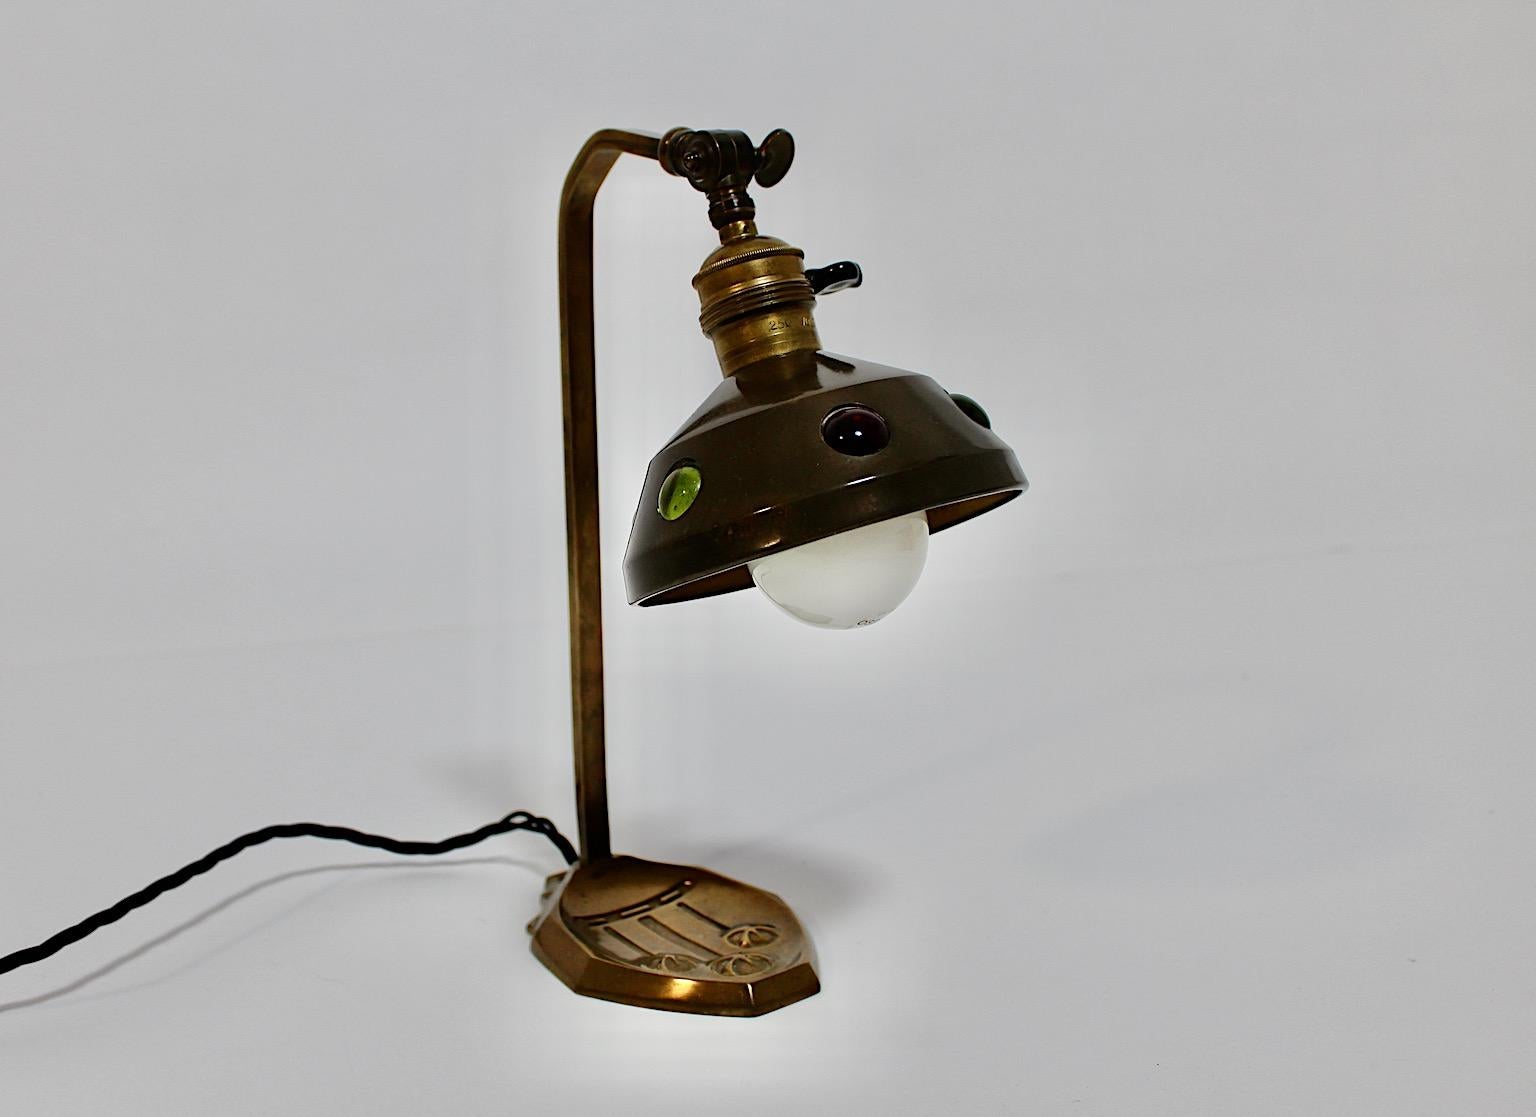 Jugendstil Tischlampe aus Messing und bunten Dekosteinen um 1910 Österreich.
Eine schöne Tischlampe aus Messing mit sechs wunderschönen mehrfarbigen Dekosteinen halbschalenförmig am Schirm.
Diese Tischleuchte ist mit einem schwarzen Kabel neu